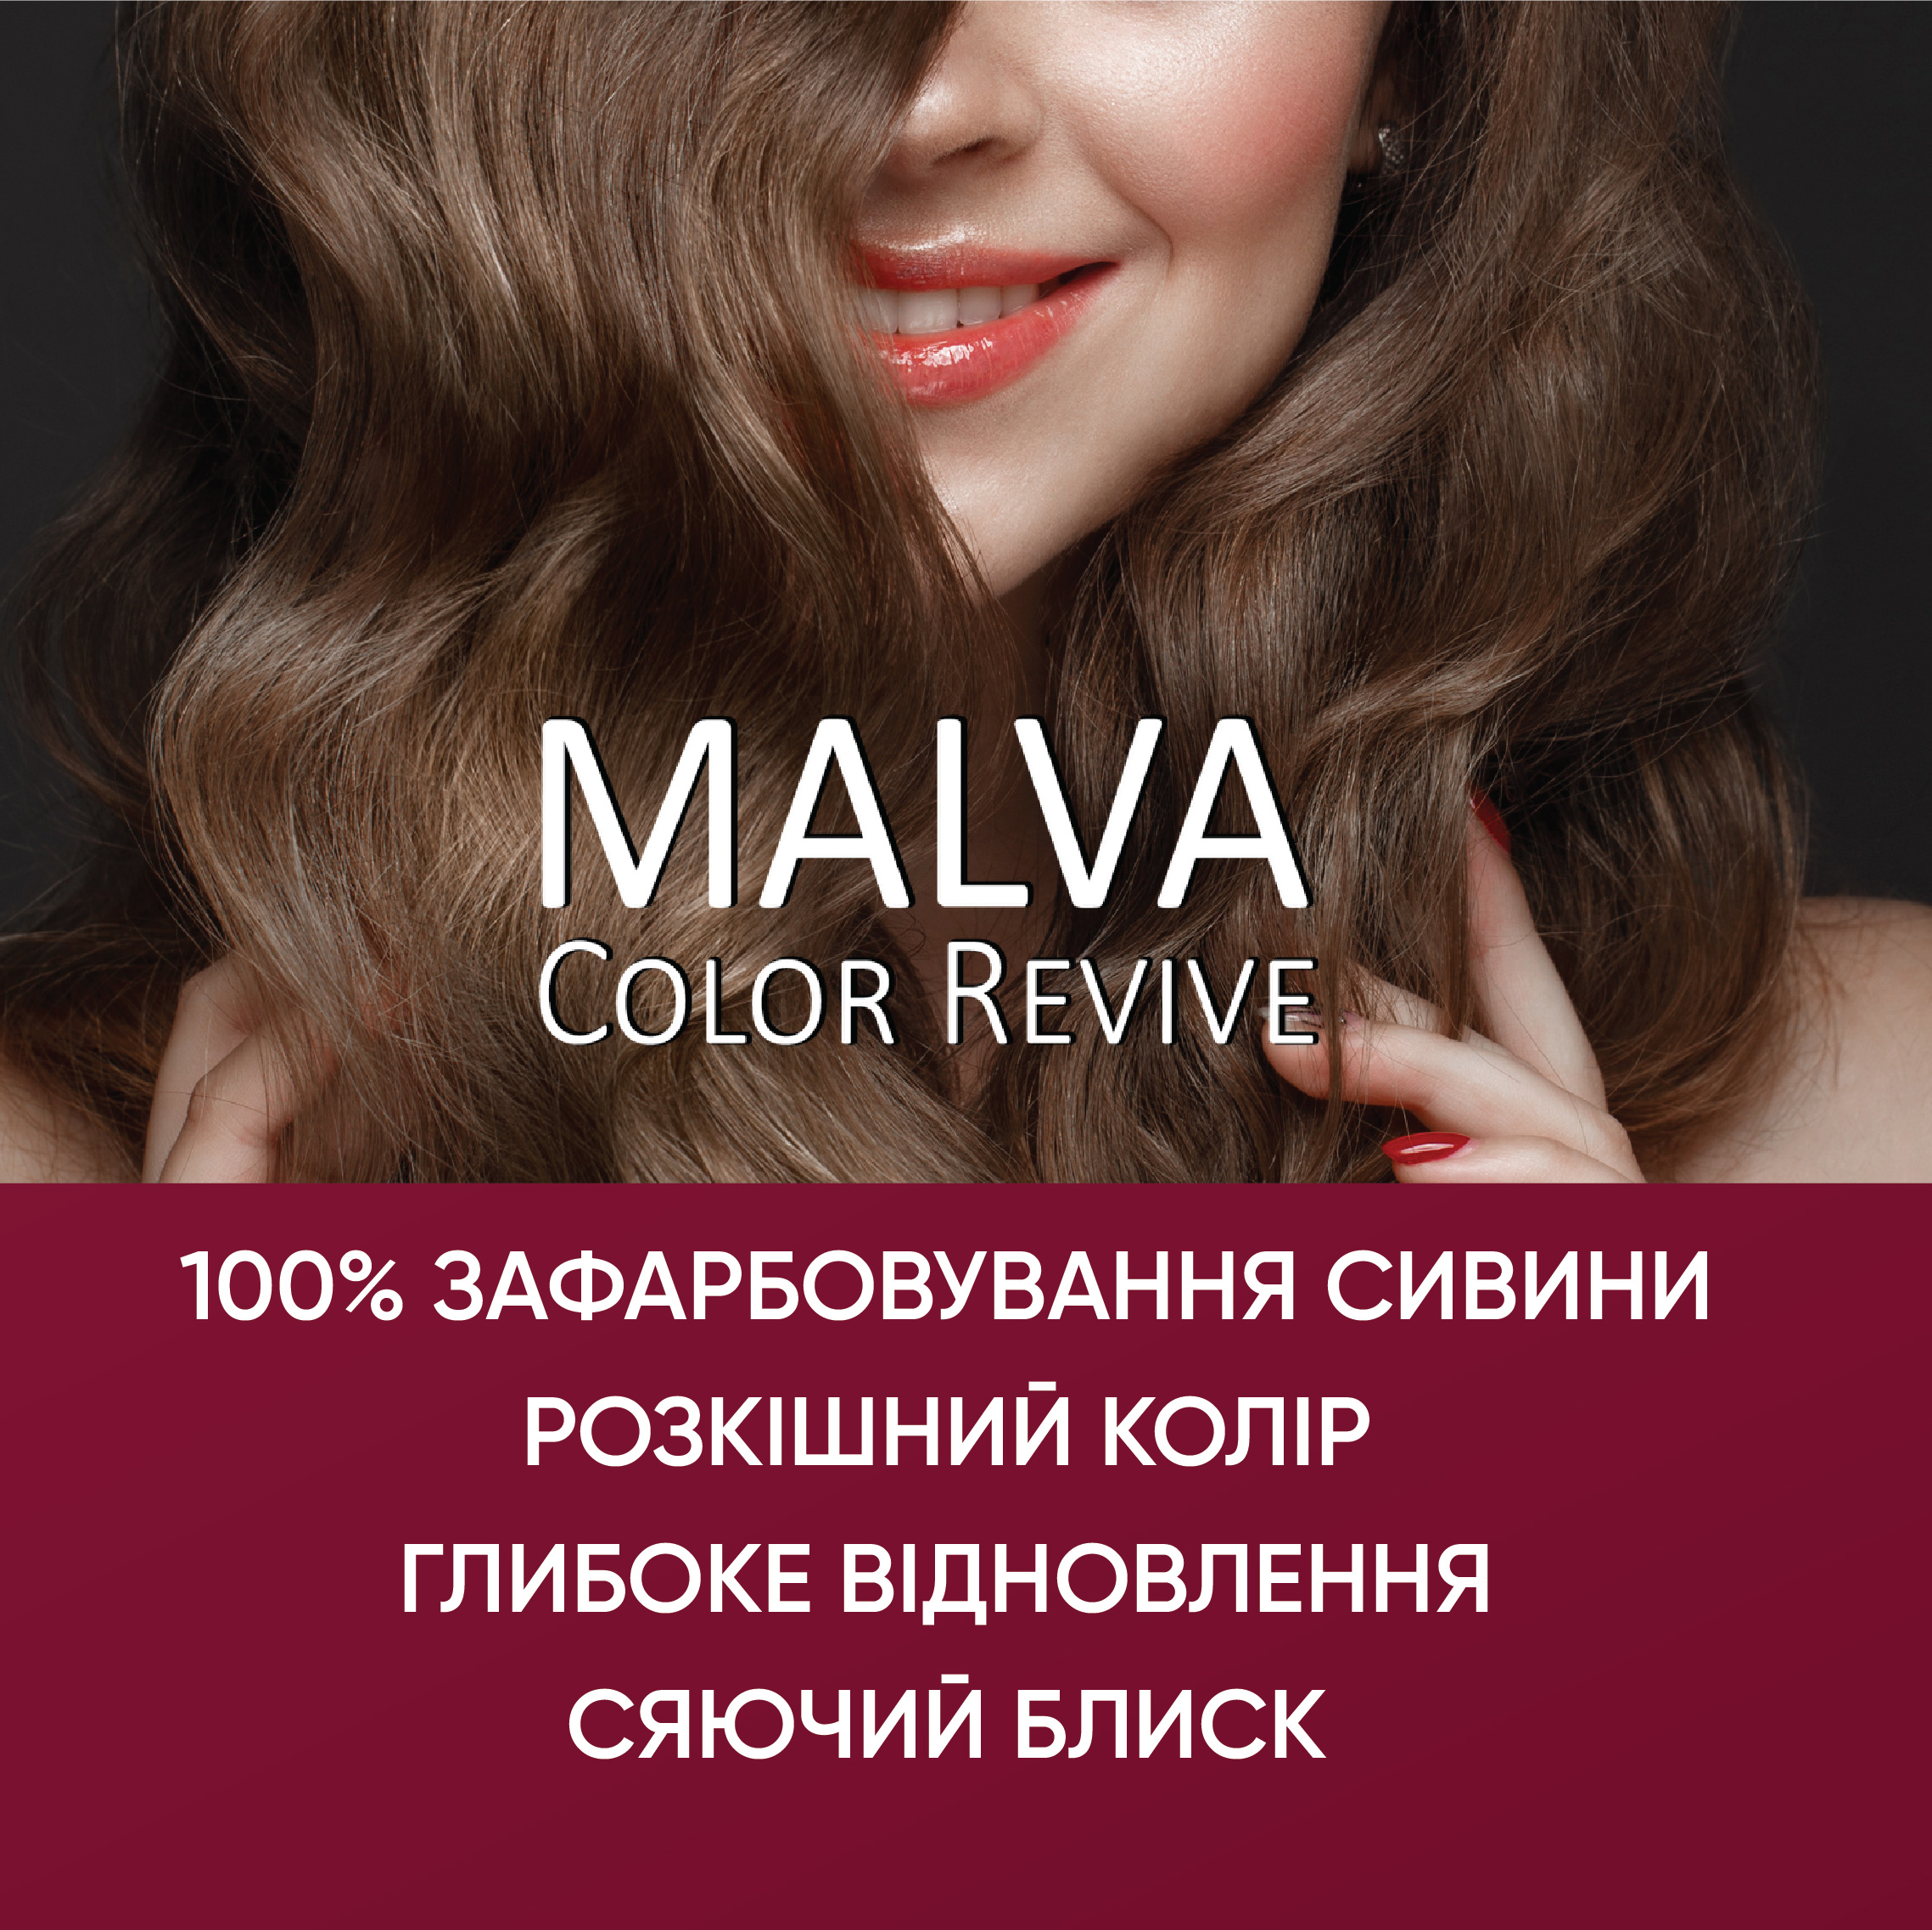 Устойчивая крем-краска для волос Malva Color Revive оттенок 033 Махагон - фото 5